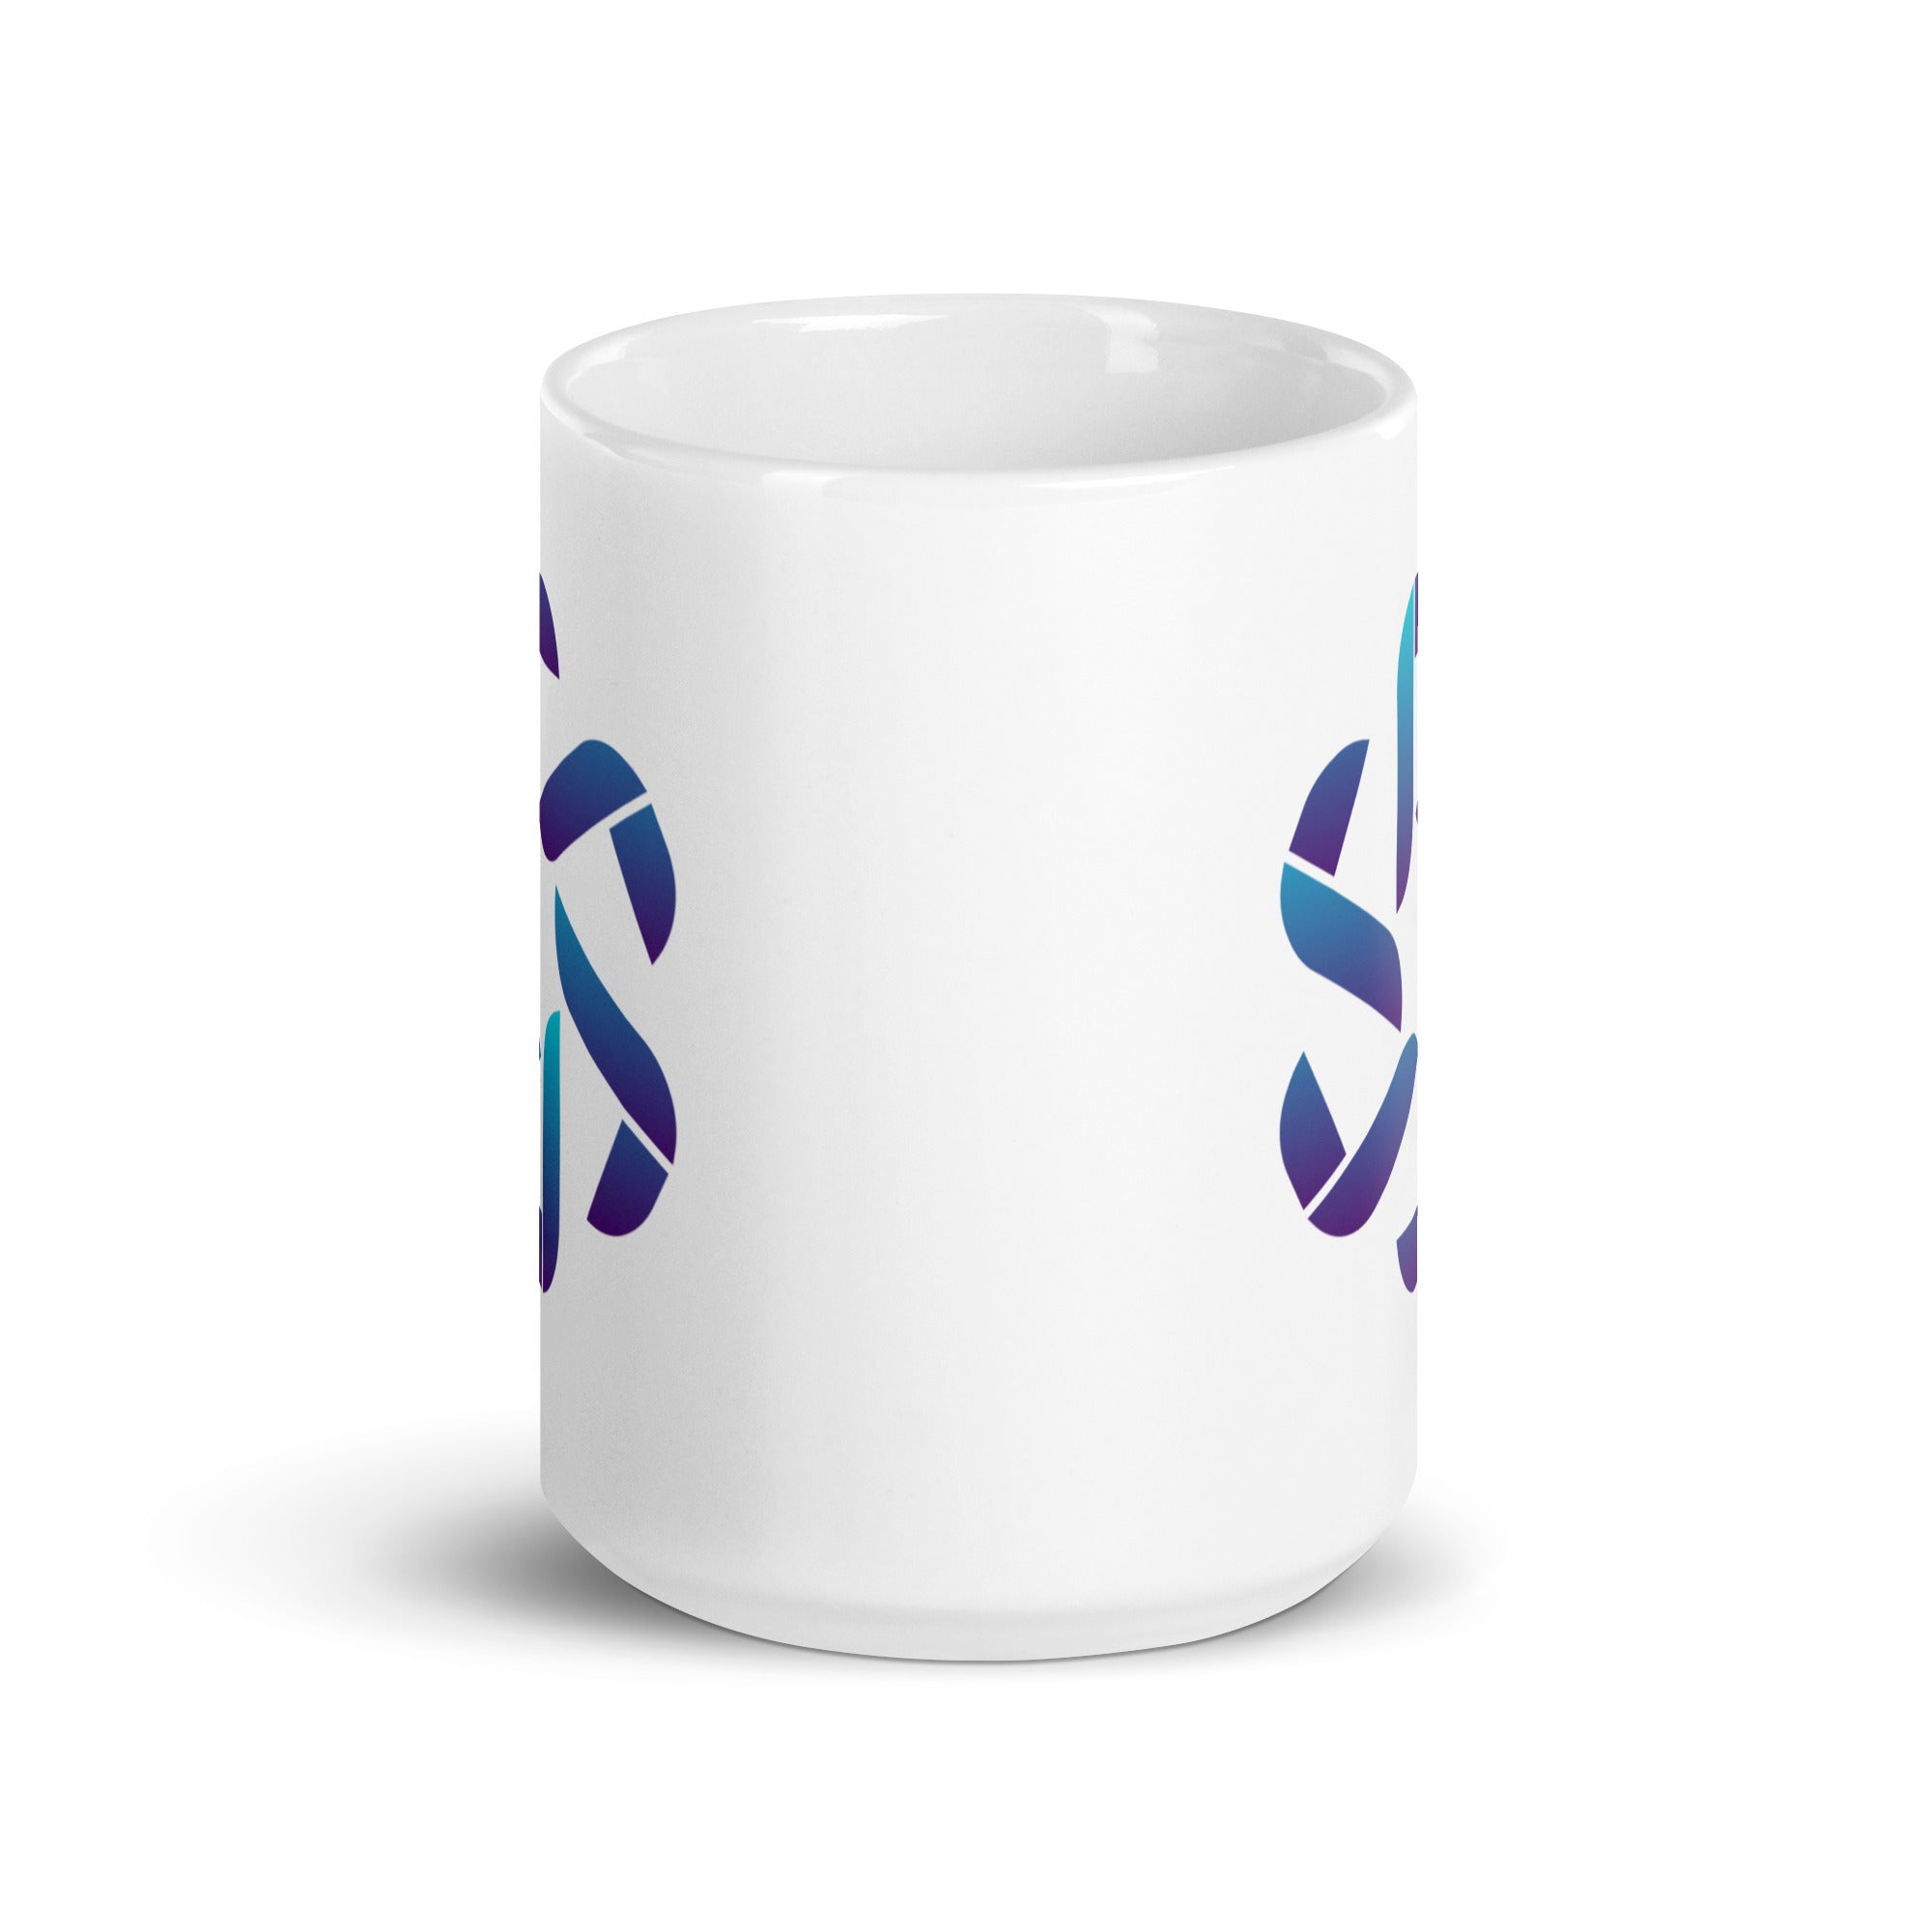 Jchosen - White glossy mug